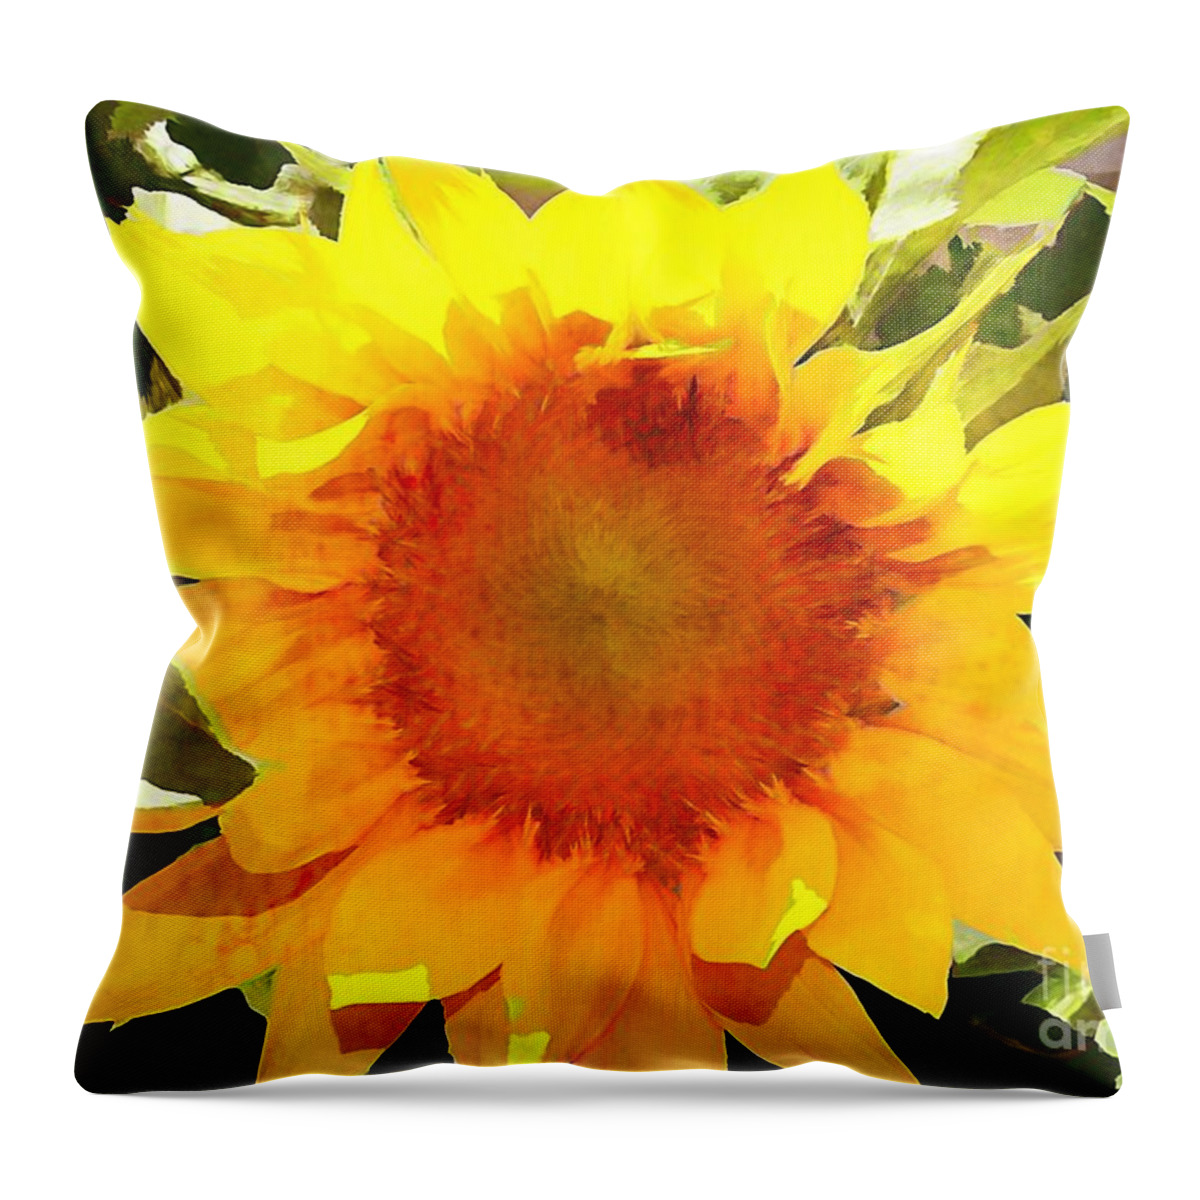 Sunflower Throw Pillow featuring the photograph Sunburst Sunflower by Judy Palkimas